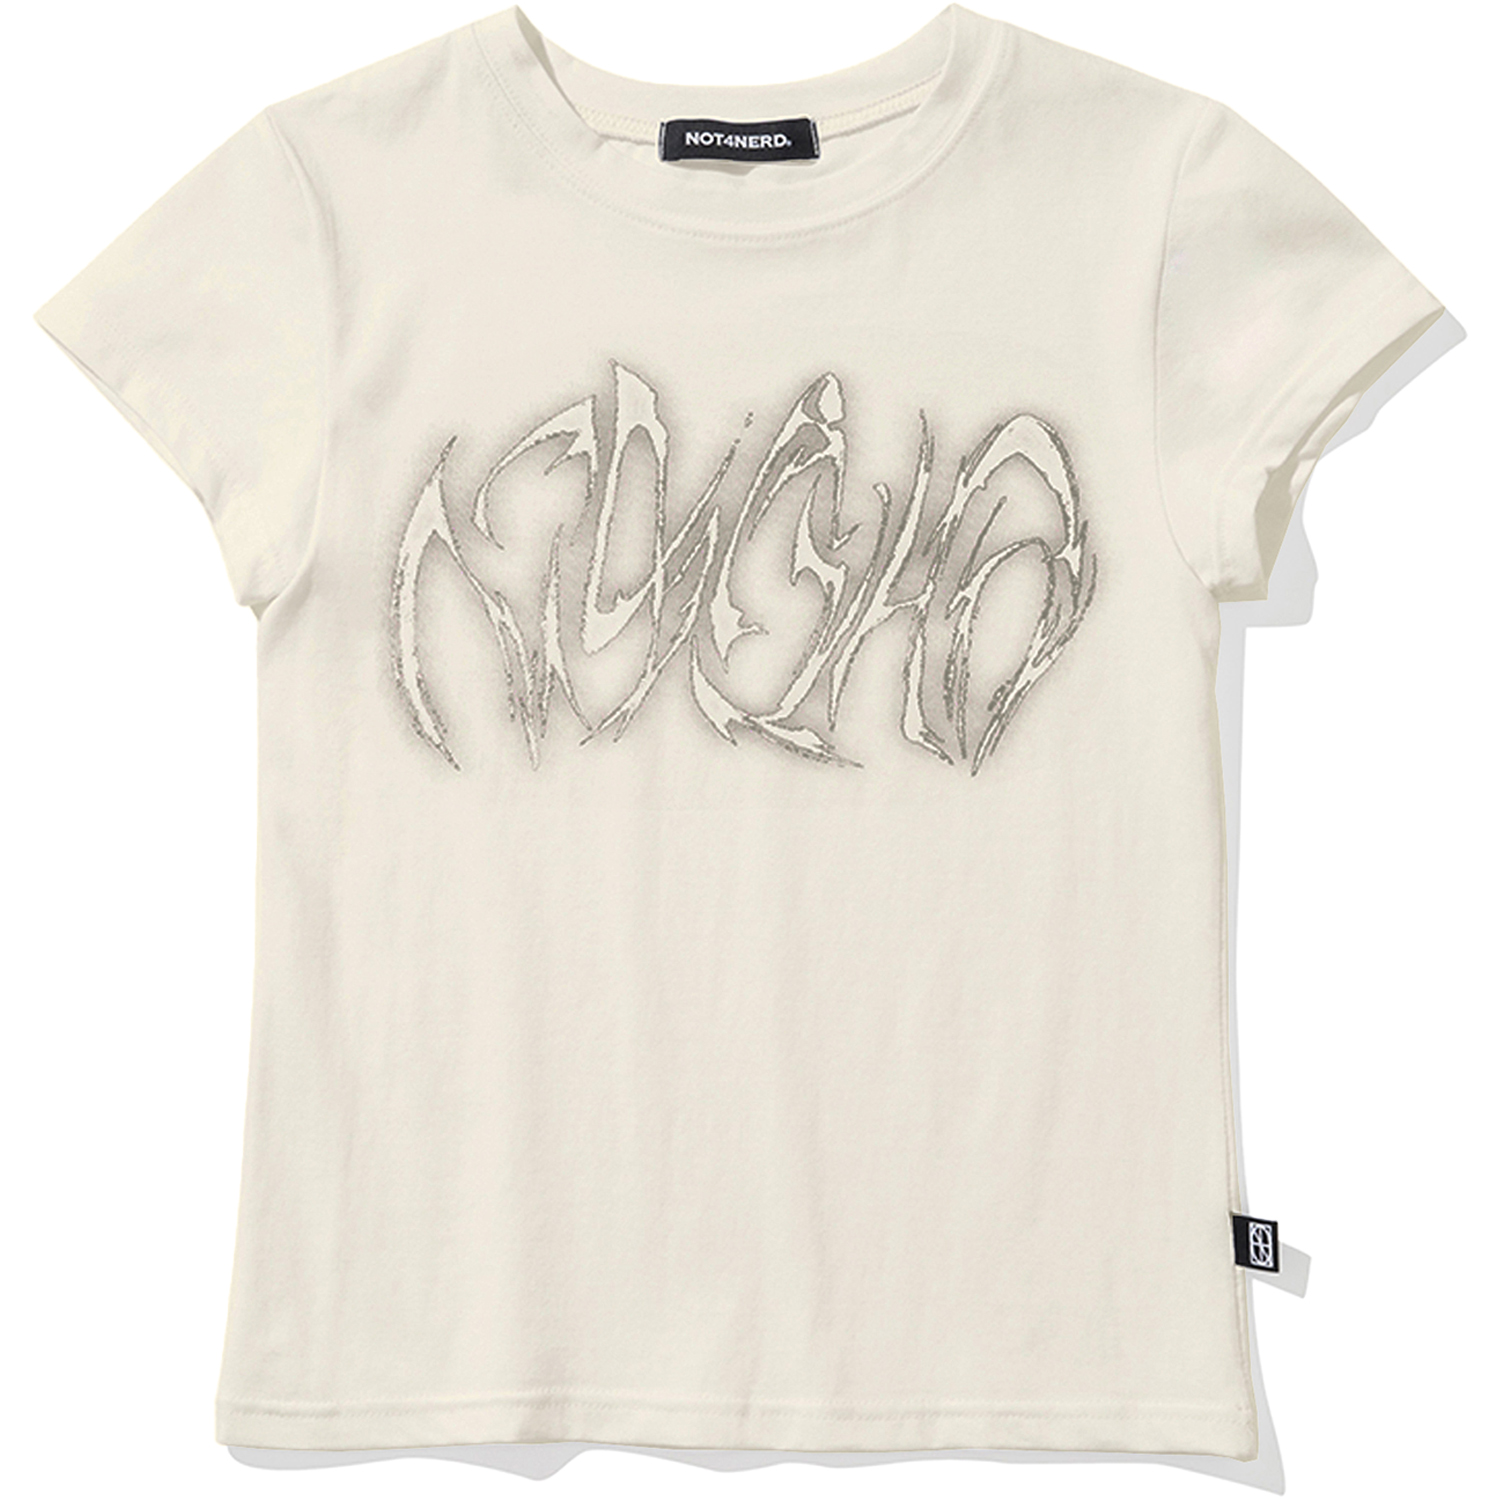 [5월 8일 예약배송] W Blur Boomerang Logo T-Shirts - Ivory,NOT4NERD